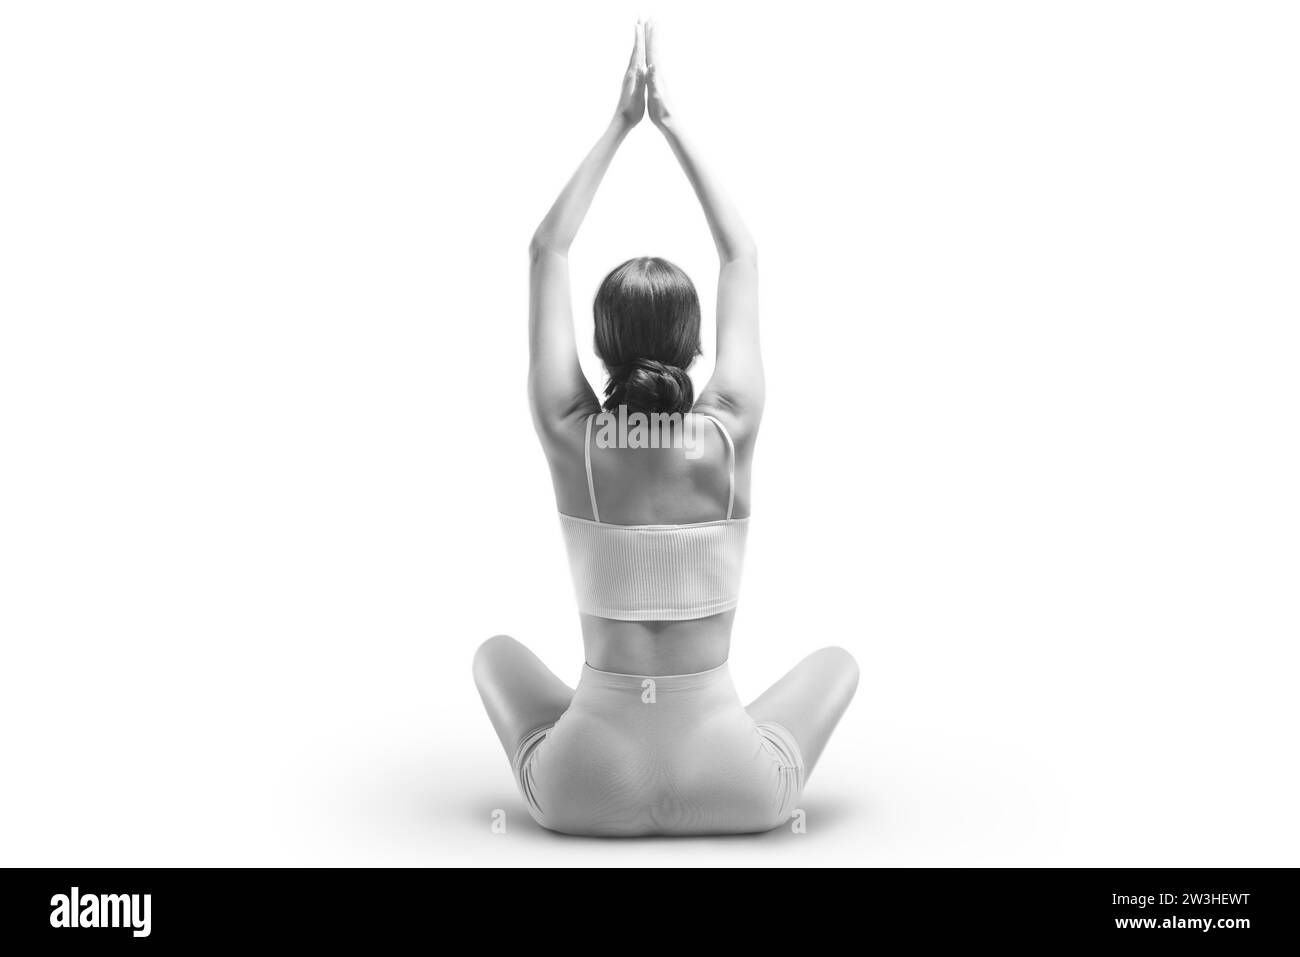 Jeune femme sportive pratiquant le yoga. Isolé sur fond blanc. Le concept d'un mode de vie sain et l'équilibre naturel entre le corps et Banque D'Images